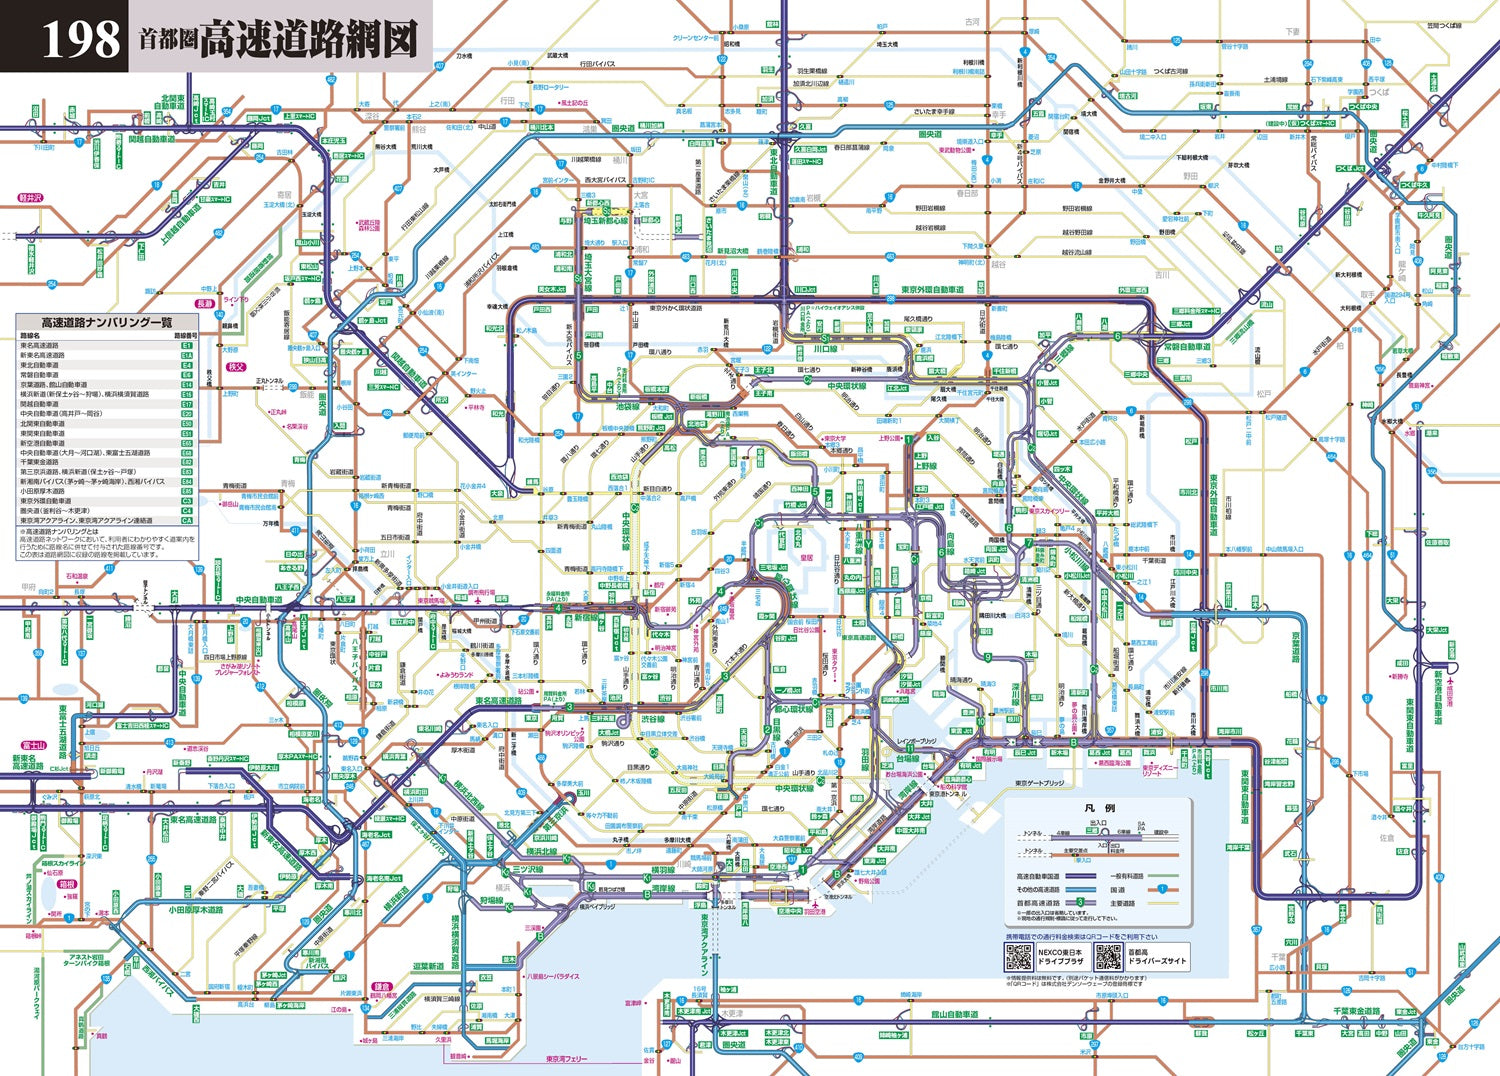 街の達人7000でっか字 埼玉 便利情報地図